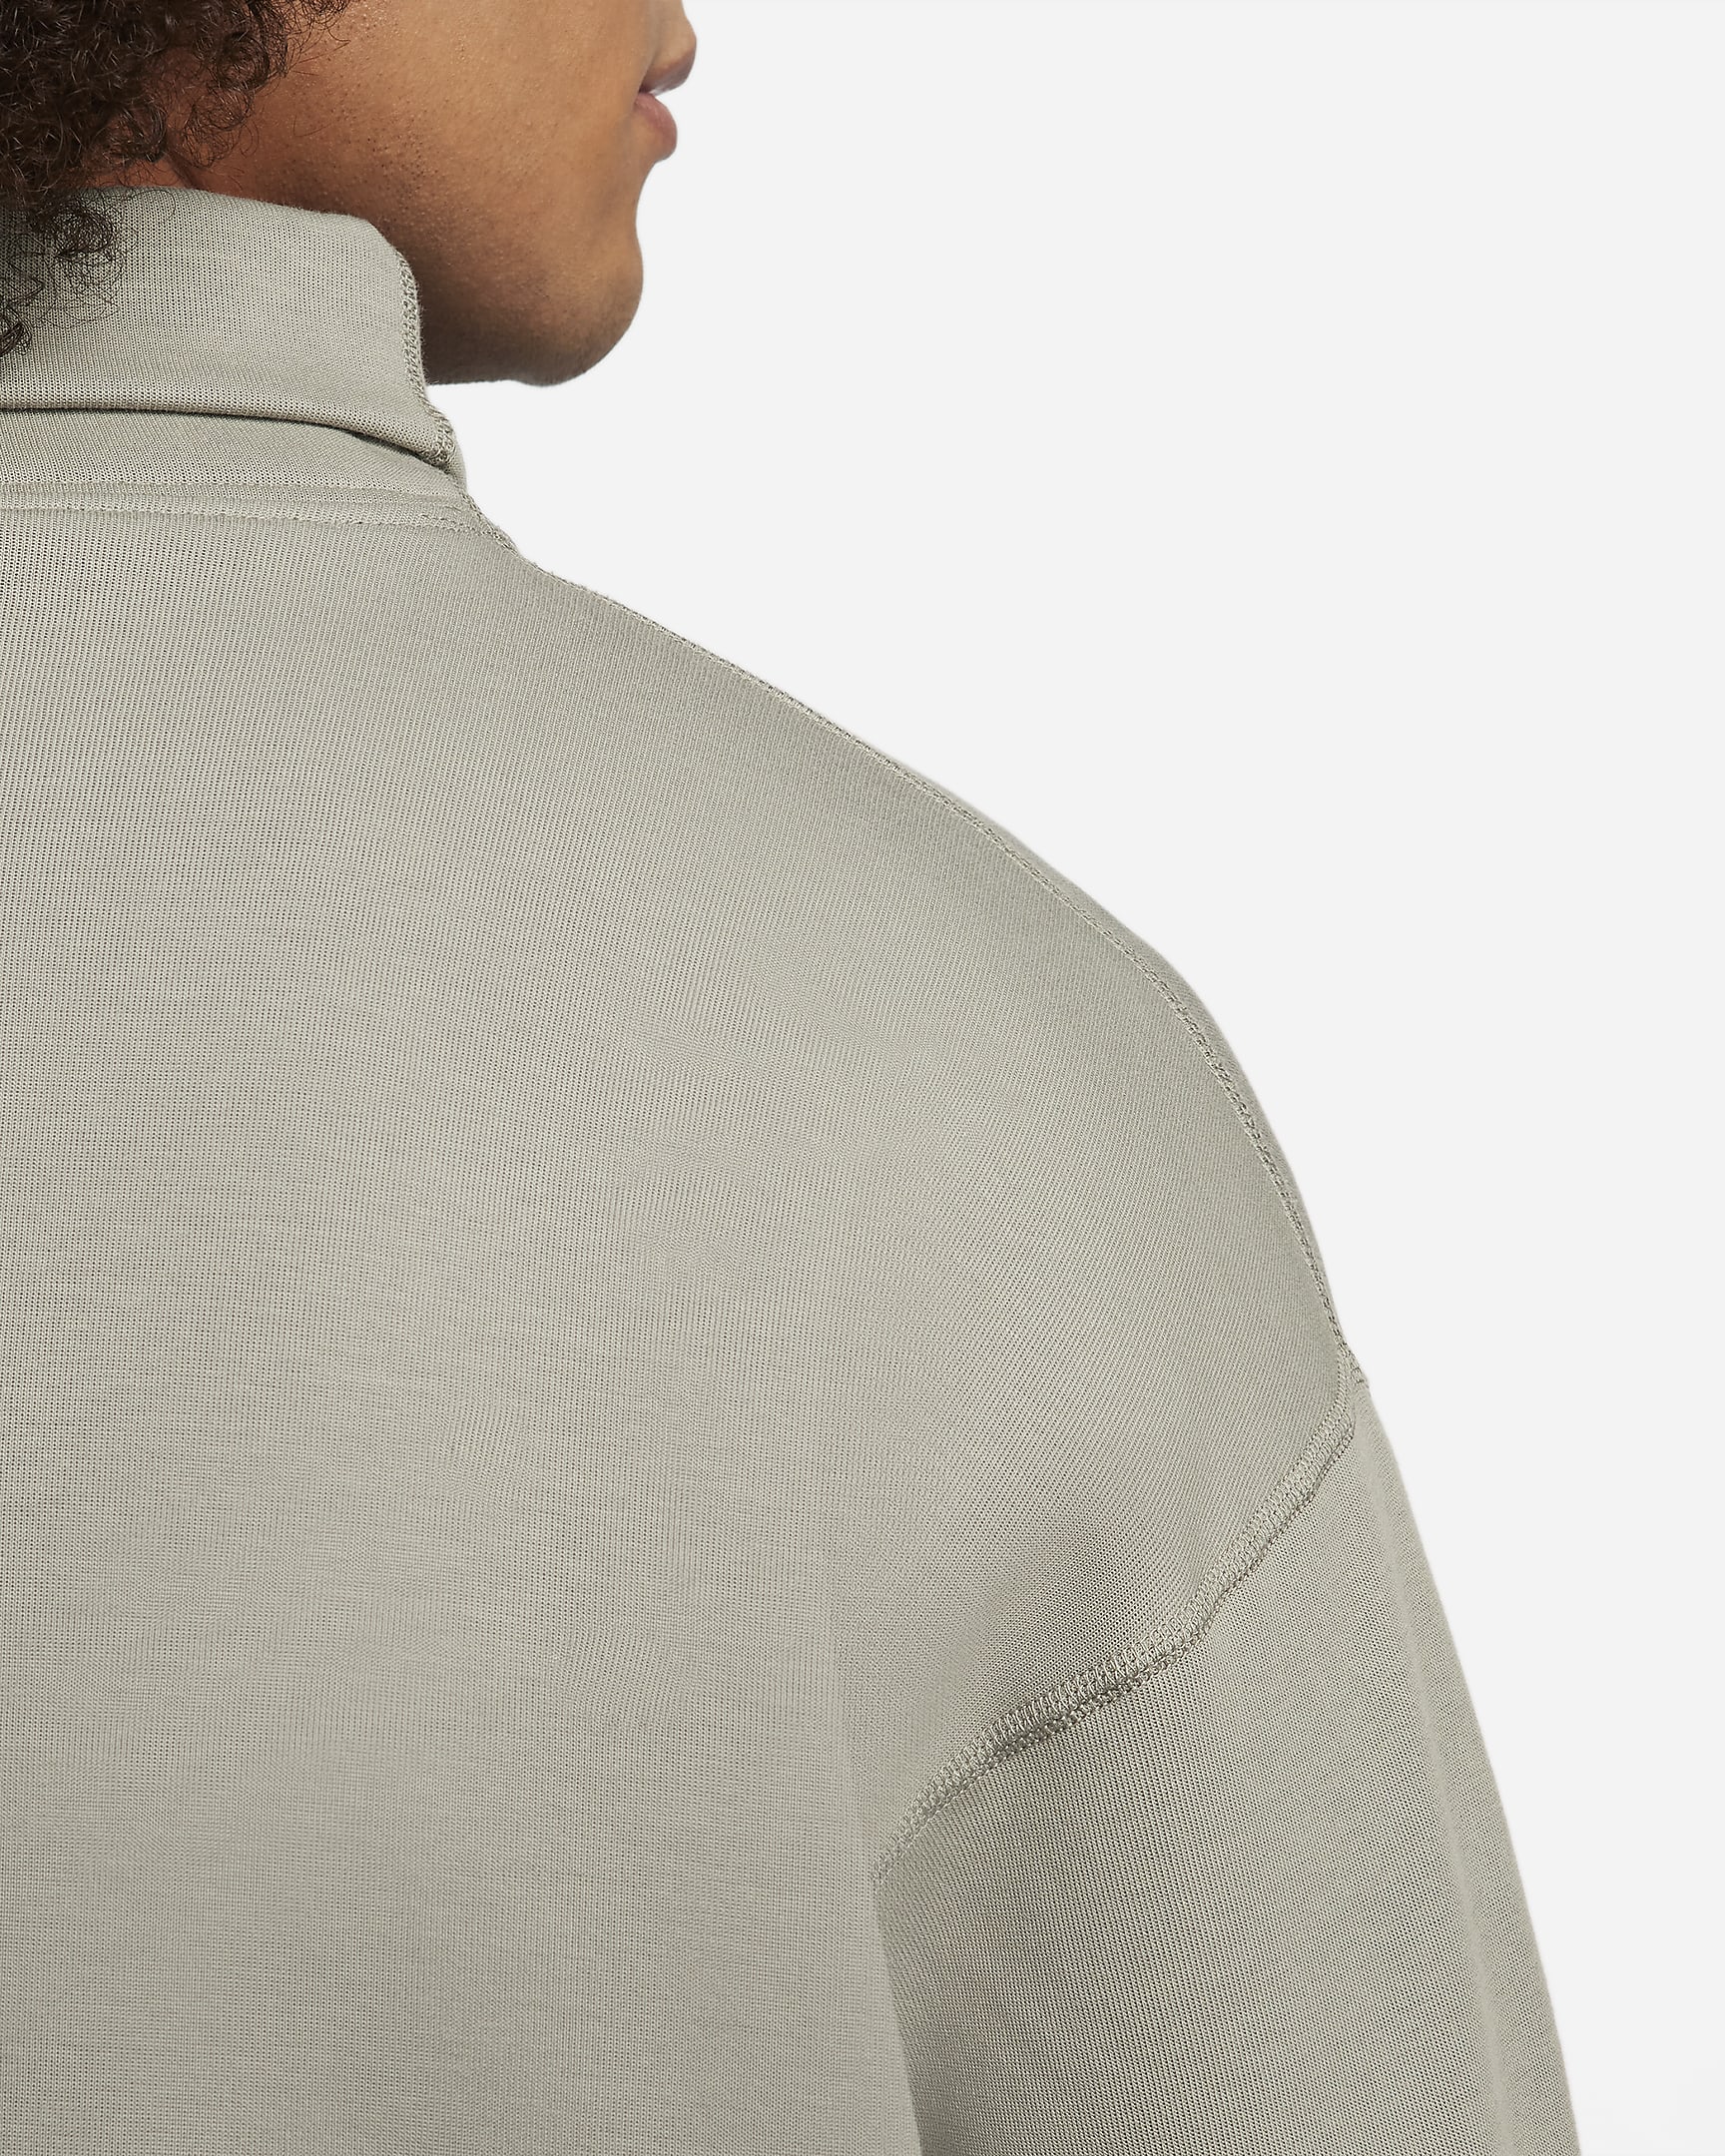 Nike Sportswear Tech Fleece Re-Imagined Men's Oversized Turtleneck ...